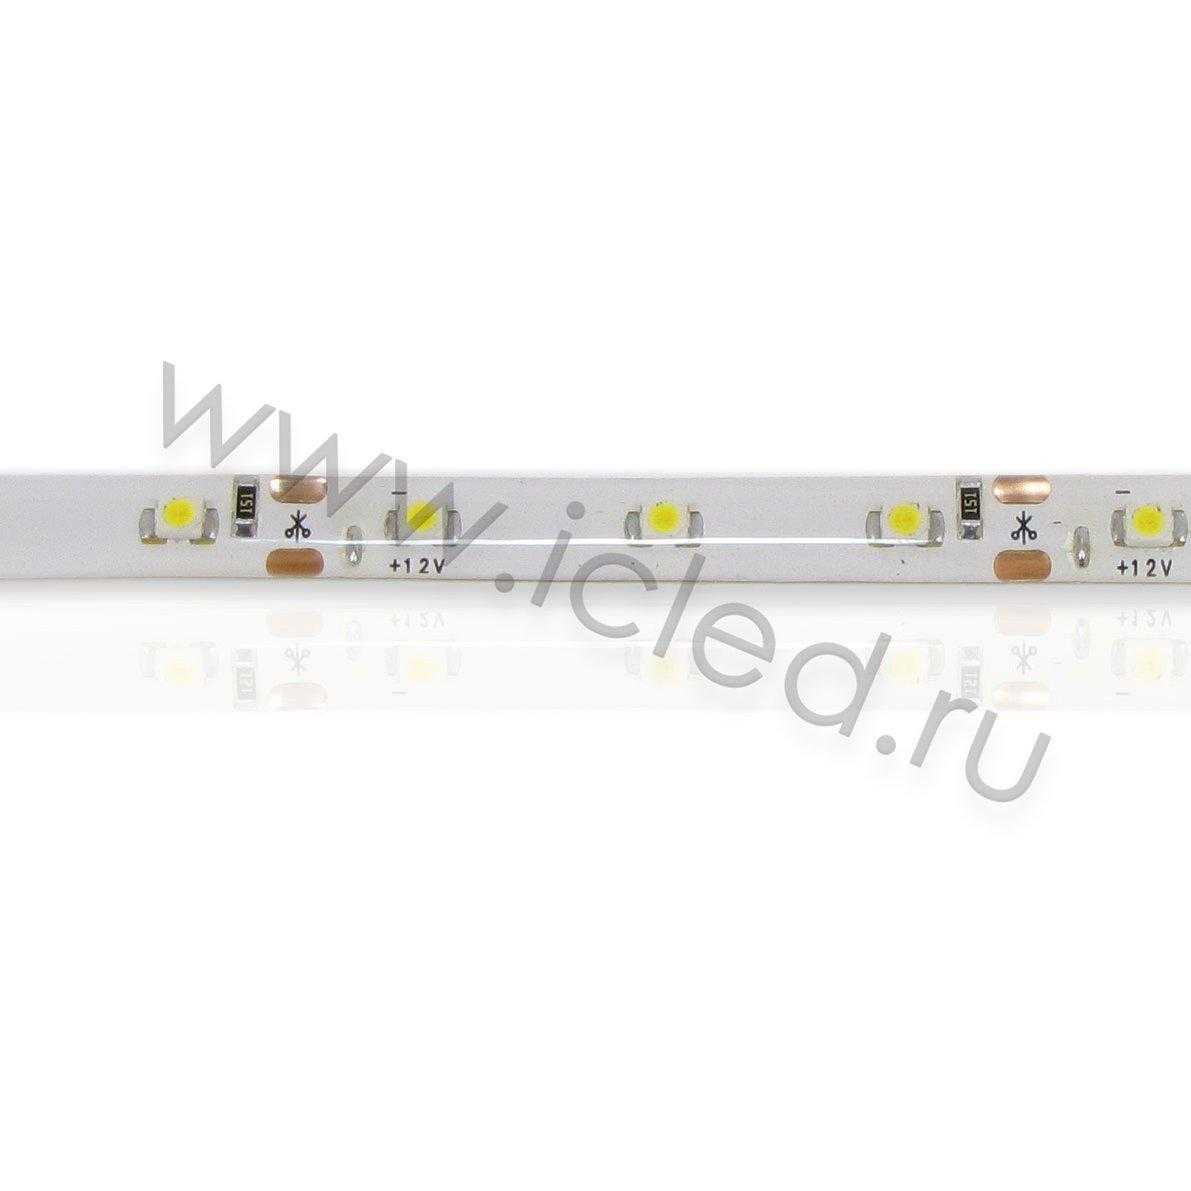 Влагозащищенные светодиодные ленты Светодиодная лента Standart class, 3528, 60led/m, Warm White, 12V, IP65 Icled